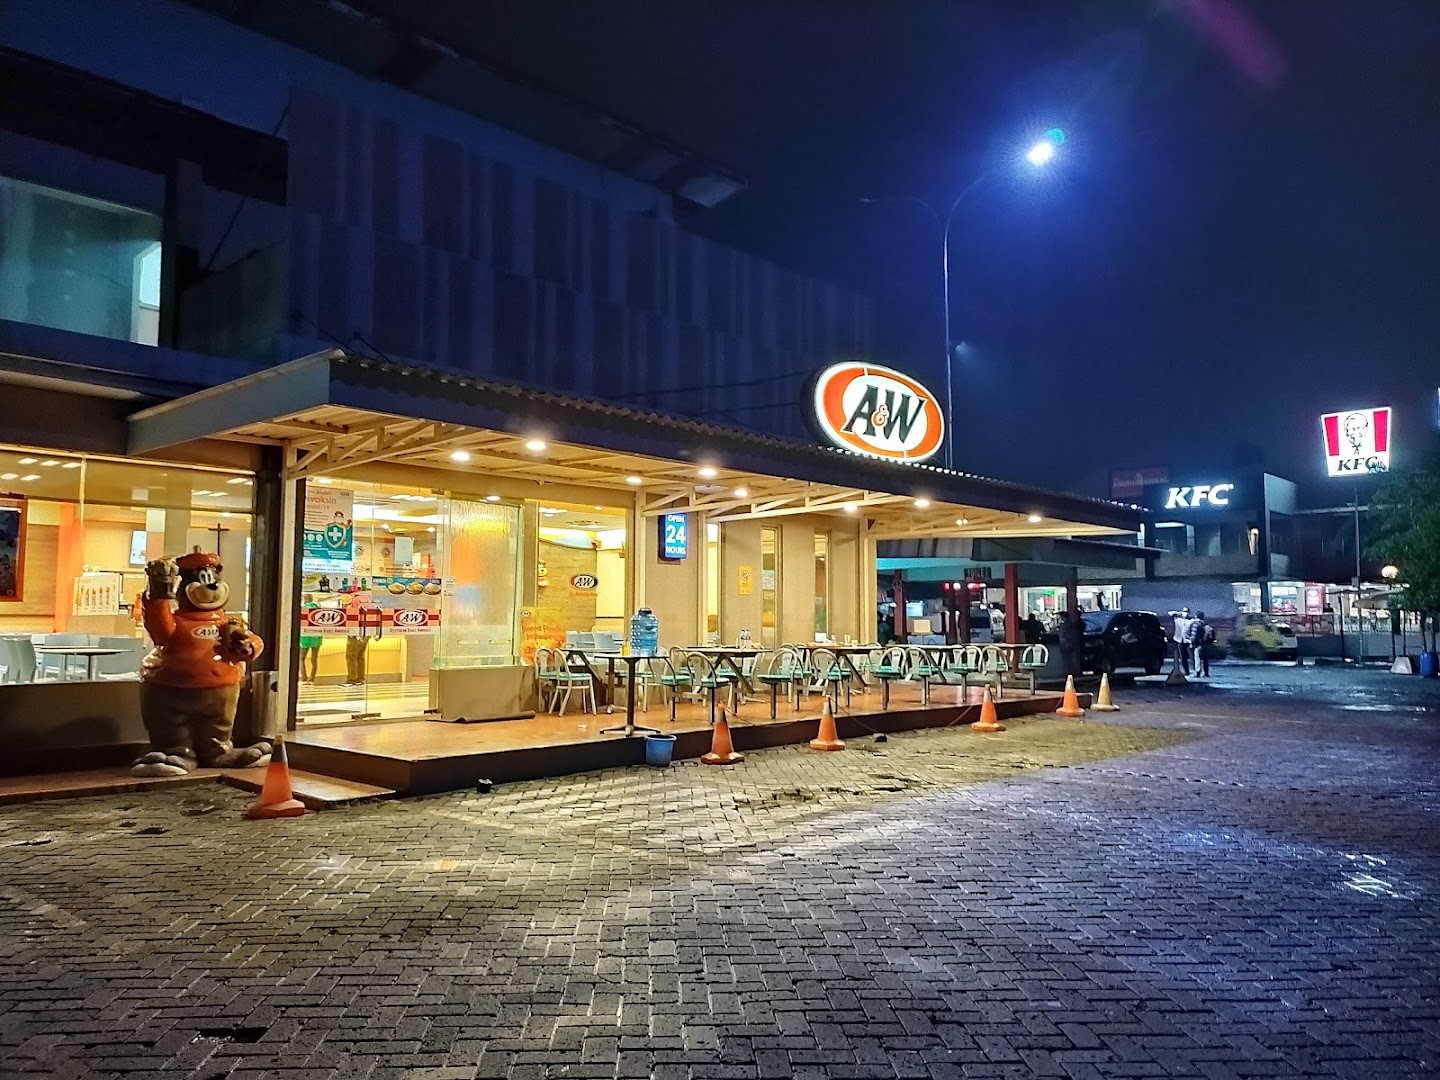 Gambar A&w Restoran - Rest Area Cikampek Km 62